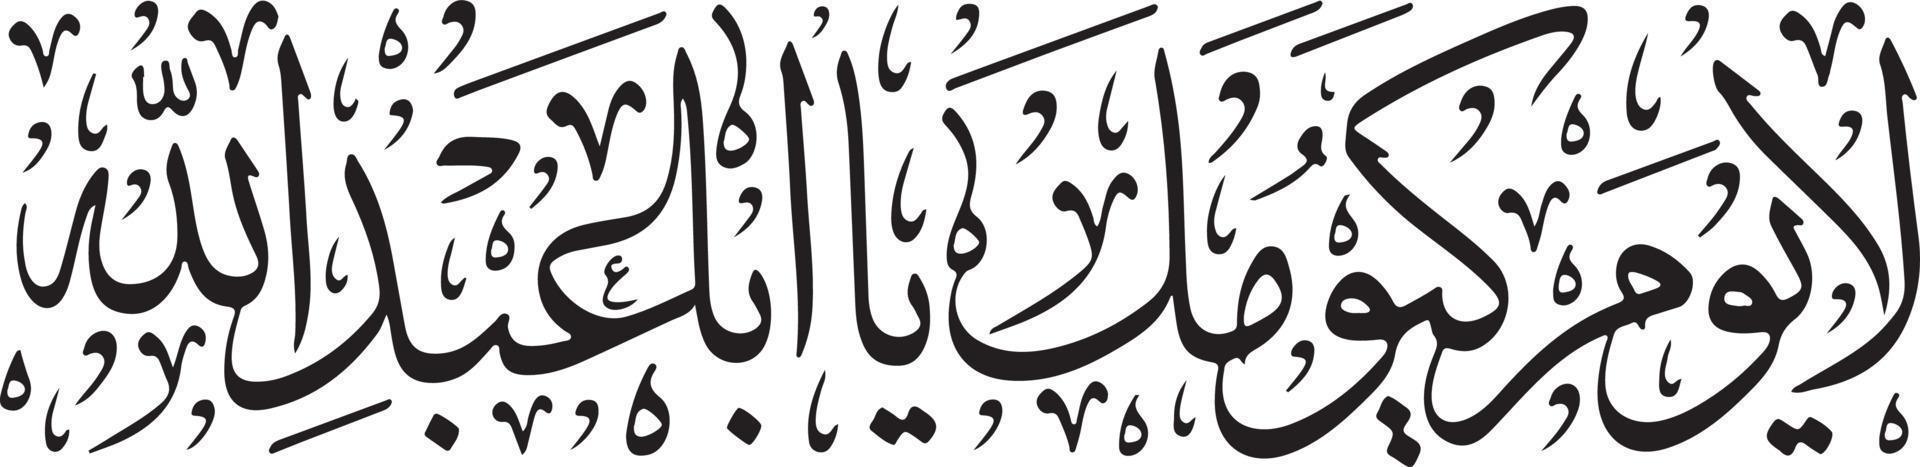 arbi titel islamische urdu arabische kalligraphie kostenloser vektor